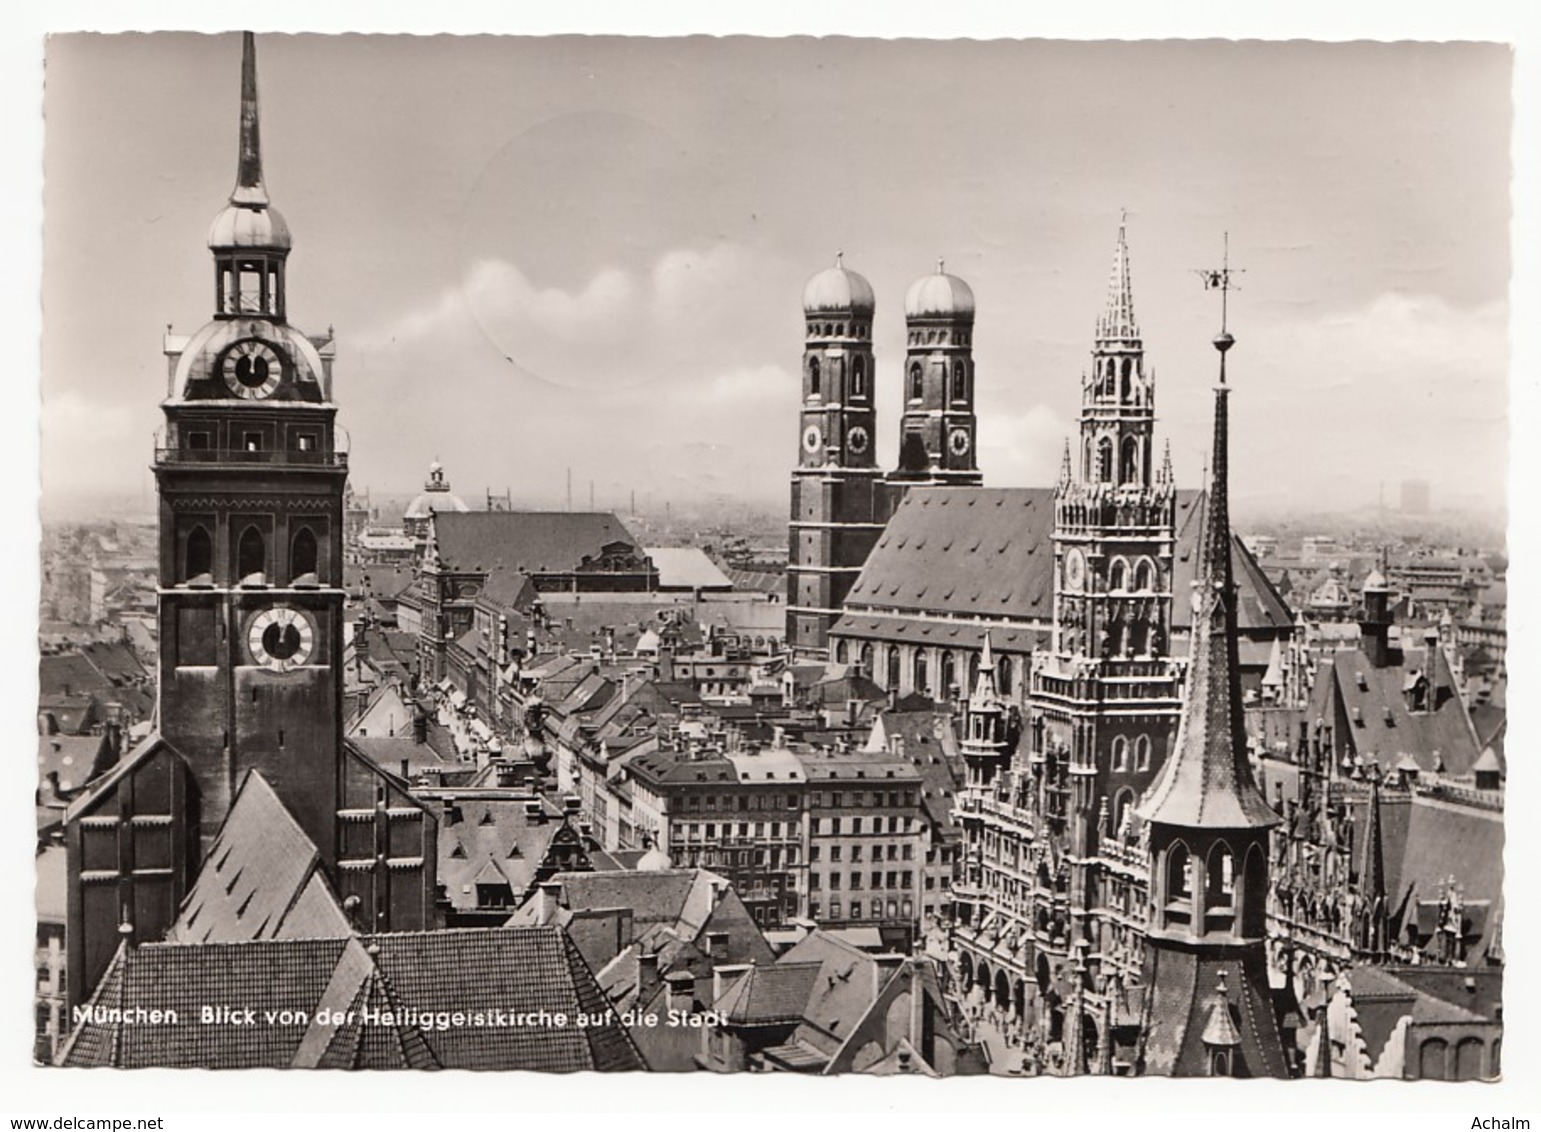 München - Blick Von Der Heiliggeistkirche Auf Die Stadt - Muenchen